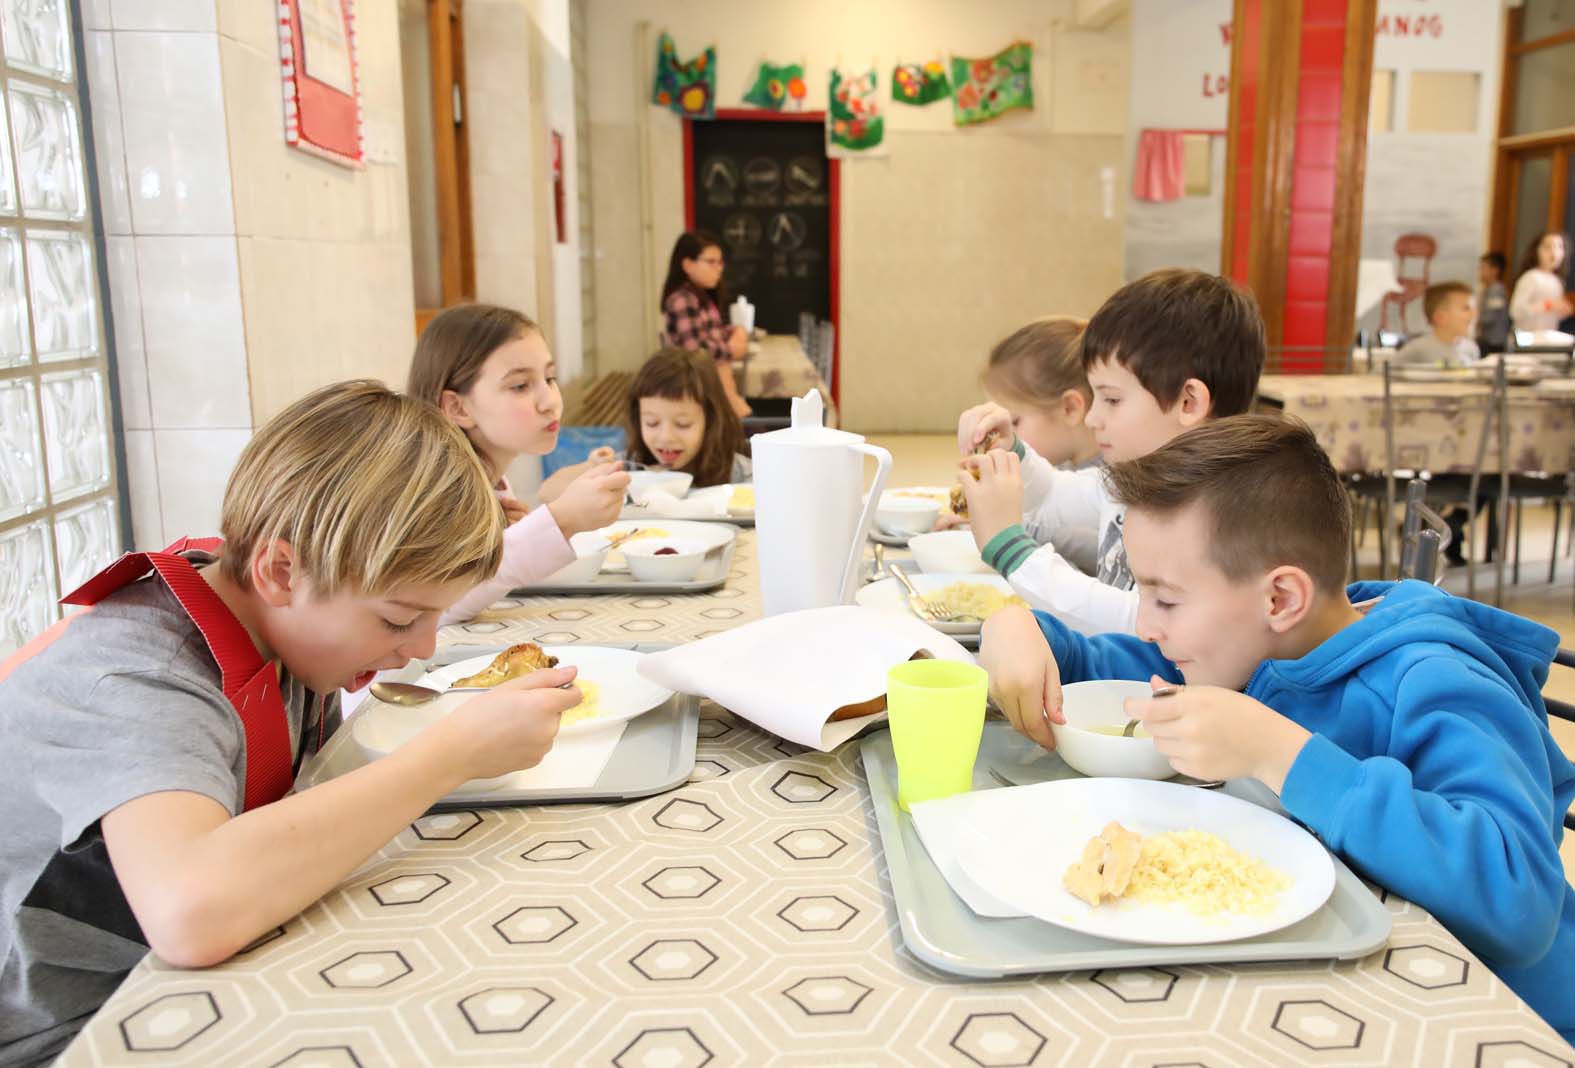 Šta i koliko jedu deca u školi: Poredili smo podatke iz Hrvatske, CG, BiH i Srbije 2